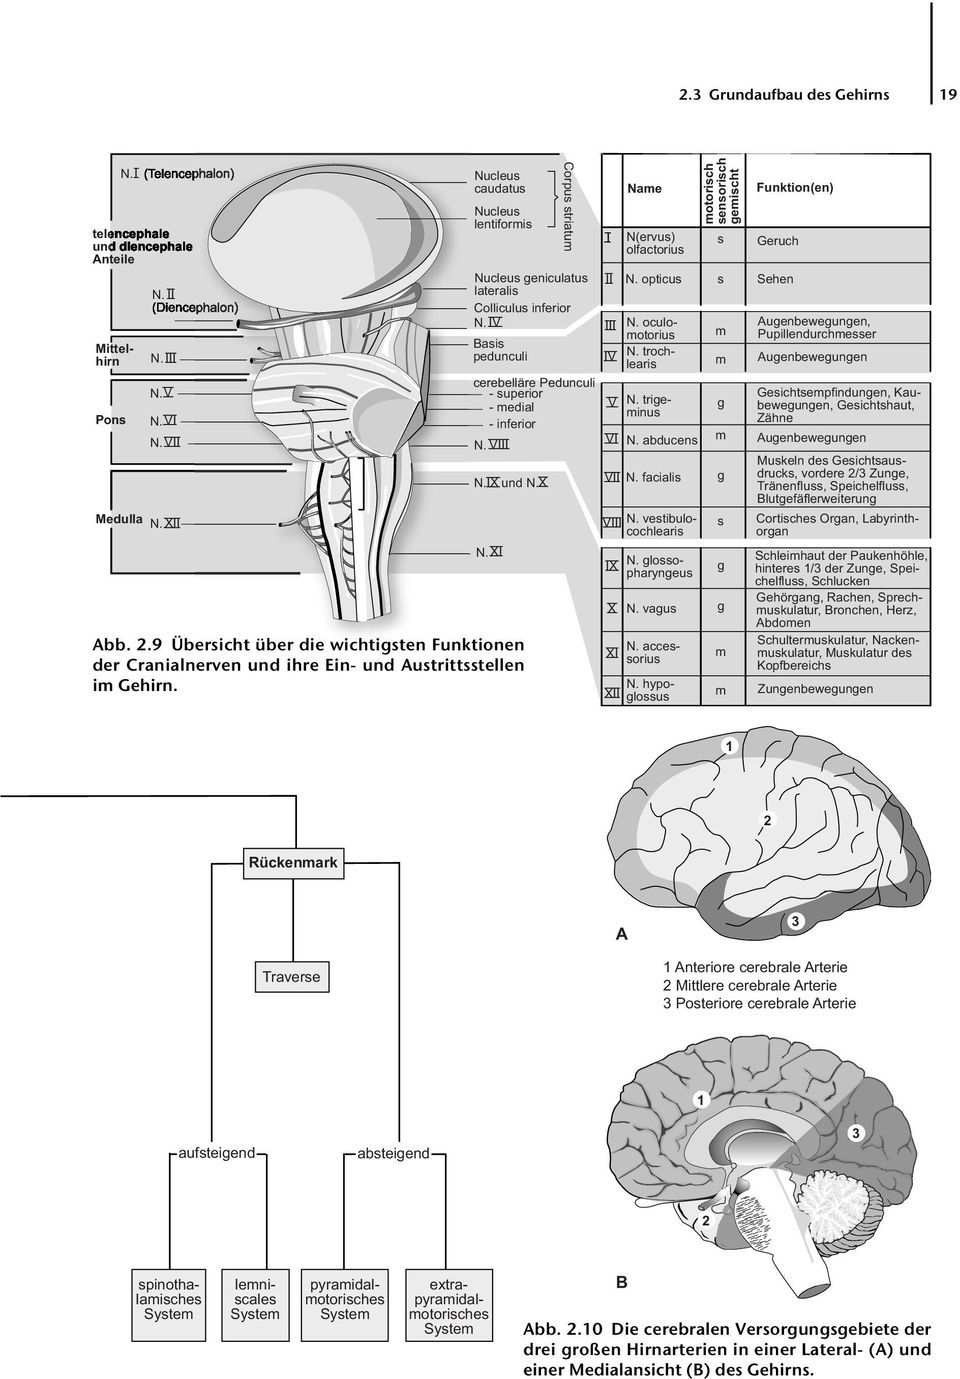 2.9 Übersicht über die wichtigsten Funktionen der Cranialnerven und ihre Ein- und Austrittsstellen im Gehirn. Corpus striatum I II III IV V VI Name N(ervus) olfactorius N. opticus N. oculomotorius N.